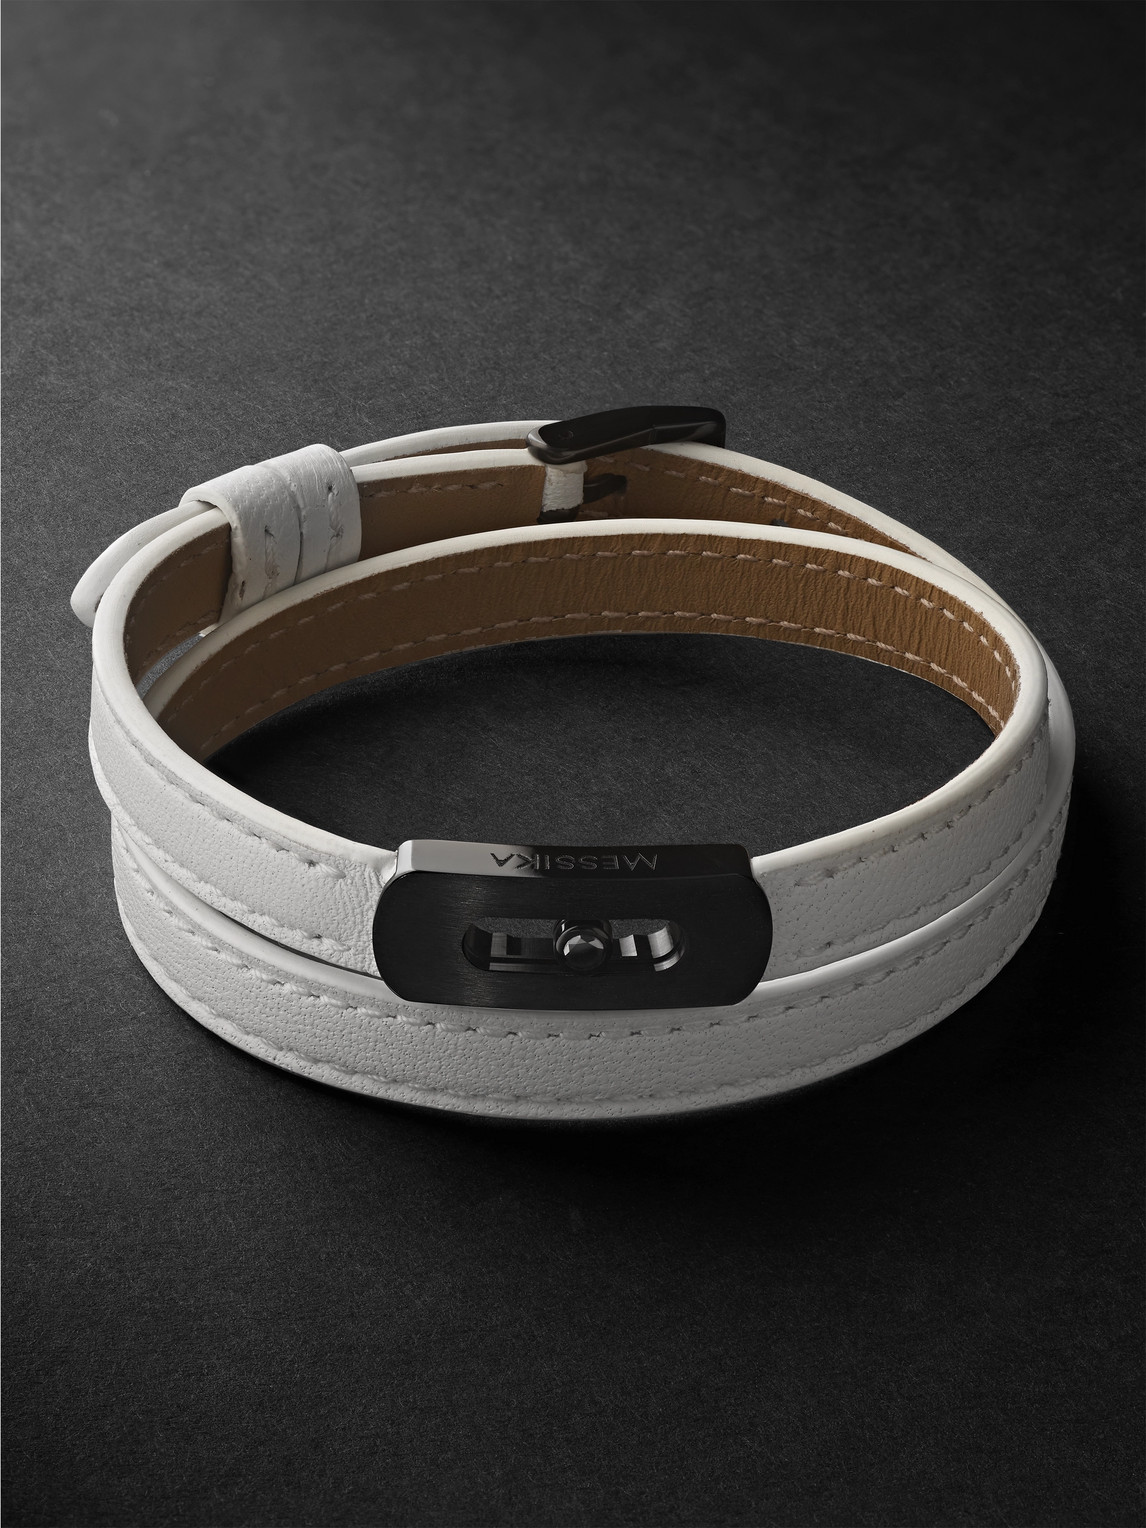 DLC-Coated Titanium and Leather Bracelet